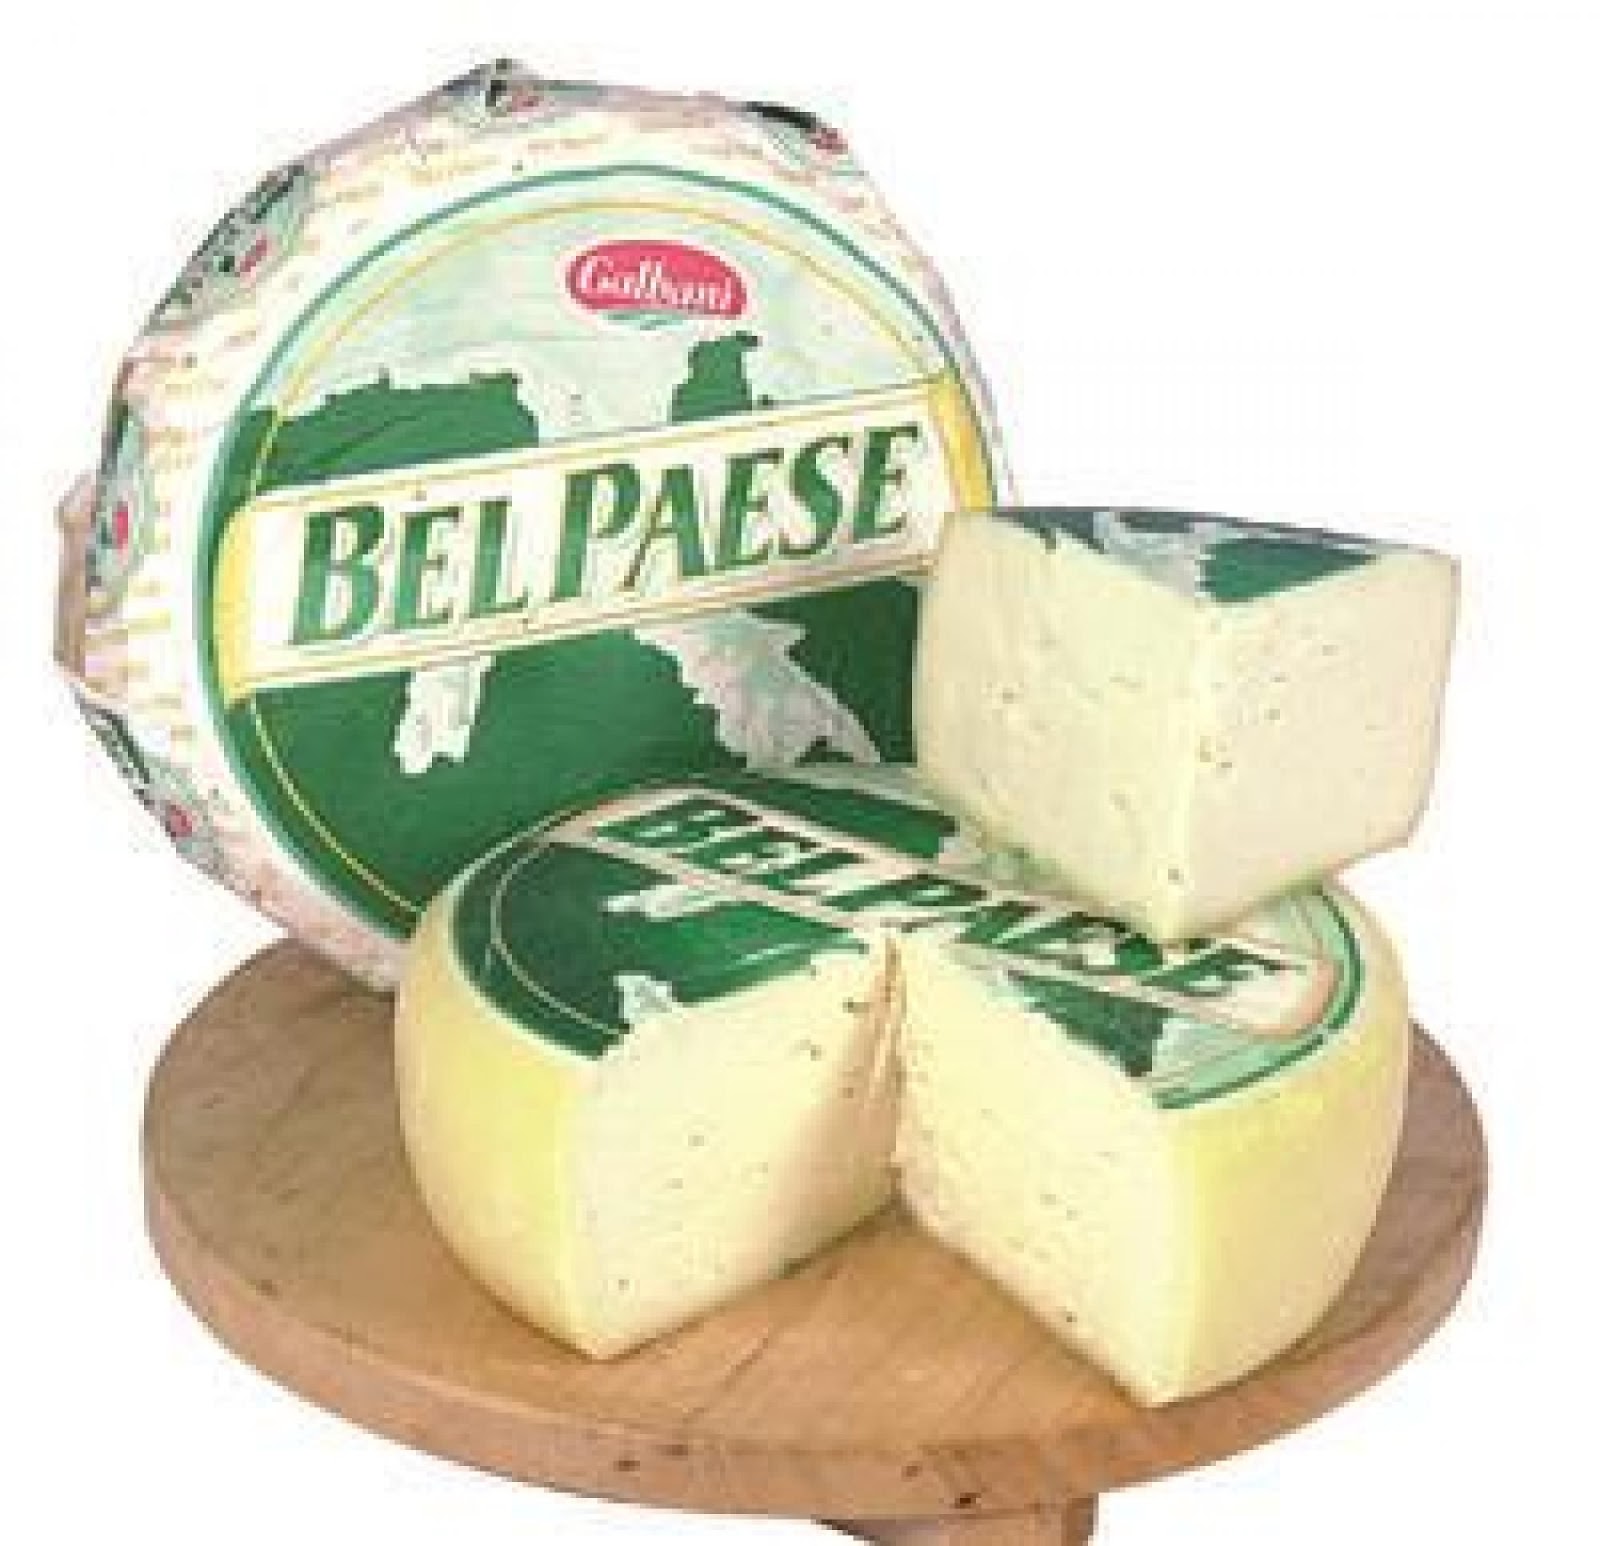 Сыр краса. Бель Паэзе сыр. Белорусский сыр Формаджио. Итальянские сыры. Домашний сыр.